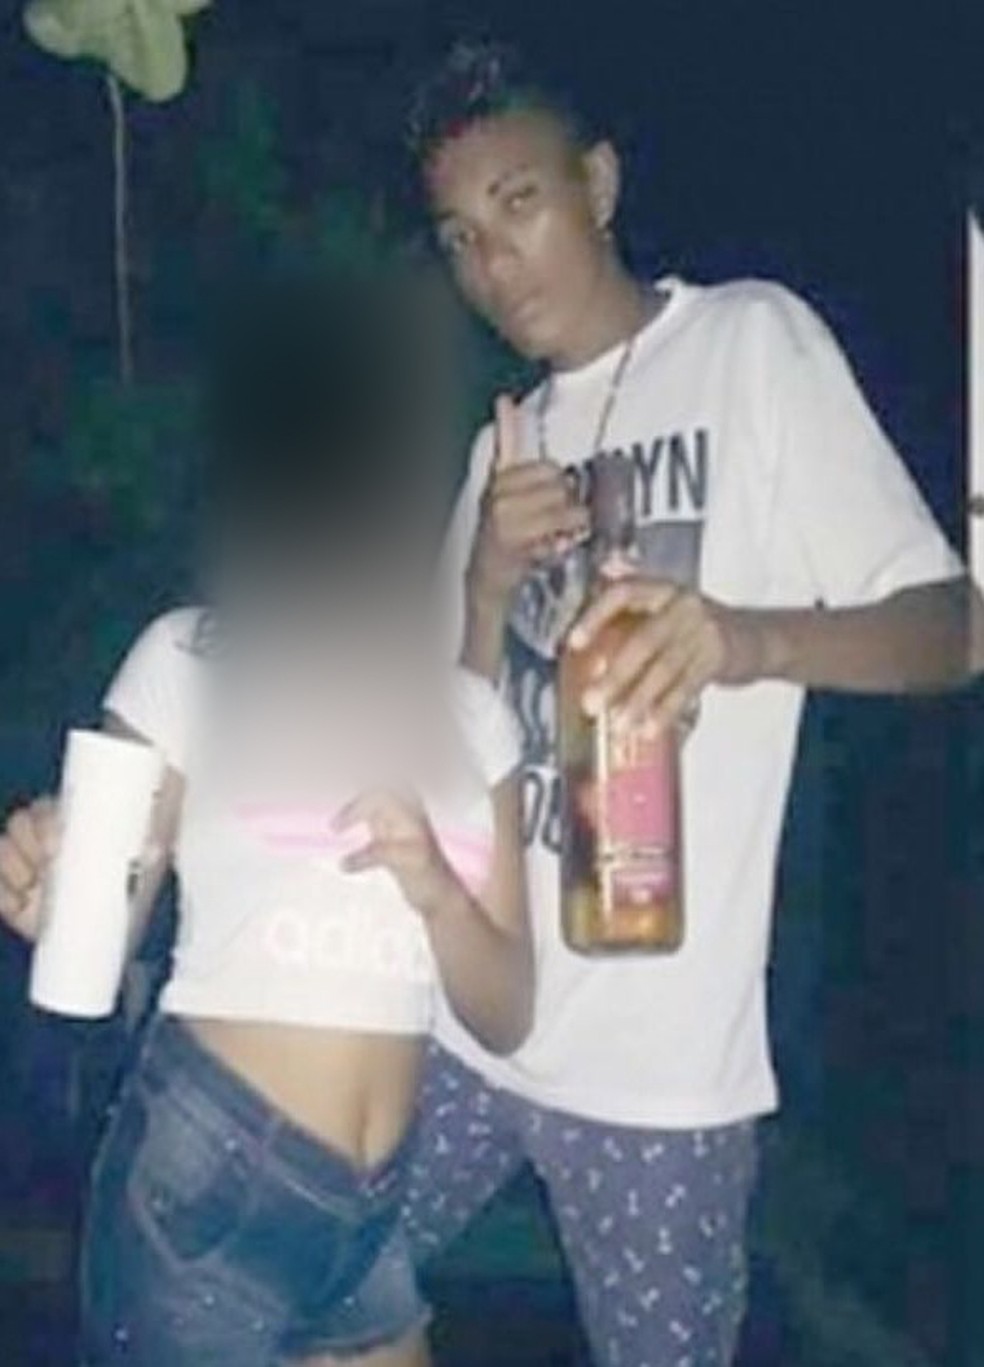 Ismael postava nas redes sociais imagens com a namorada debochando do Estado, de acordo com a Polícia (Foto: Divulgação/Polícia Civil)